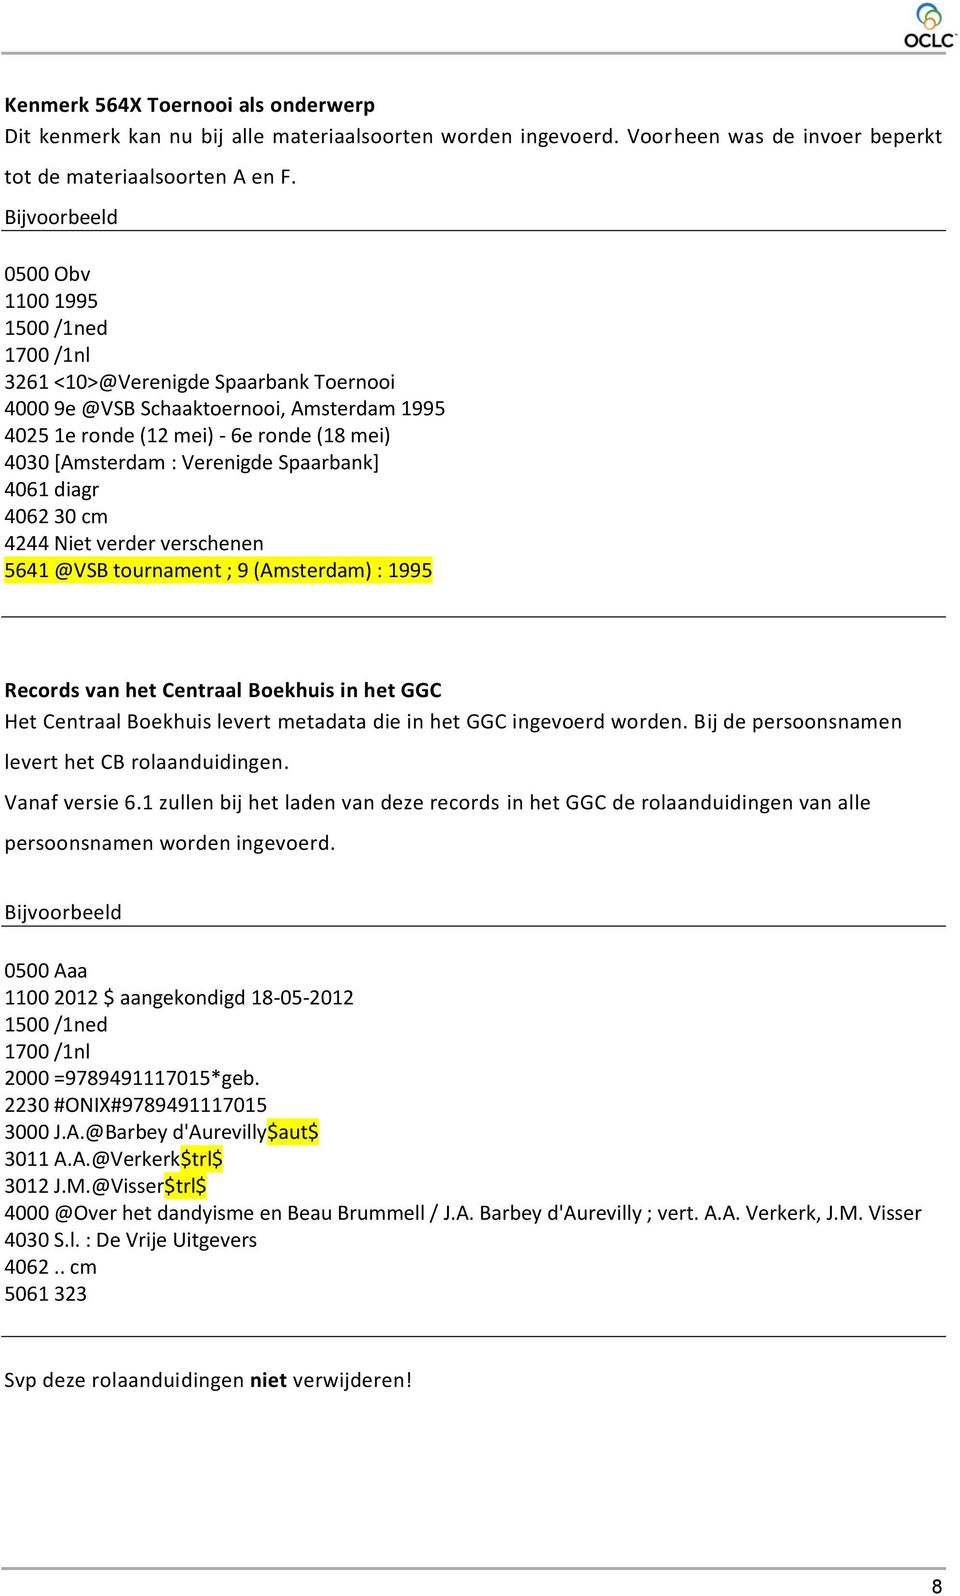 Verenigde Spaarbank] 4061 diagr 4062 30 cm 4244 Niet verder verschenen 5641 @VSB tournament ; 9 (Amsterdam) : 1995 Records van het Centraal Boekhuis in het GGC Het Centraal Boekhuis levert metadata